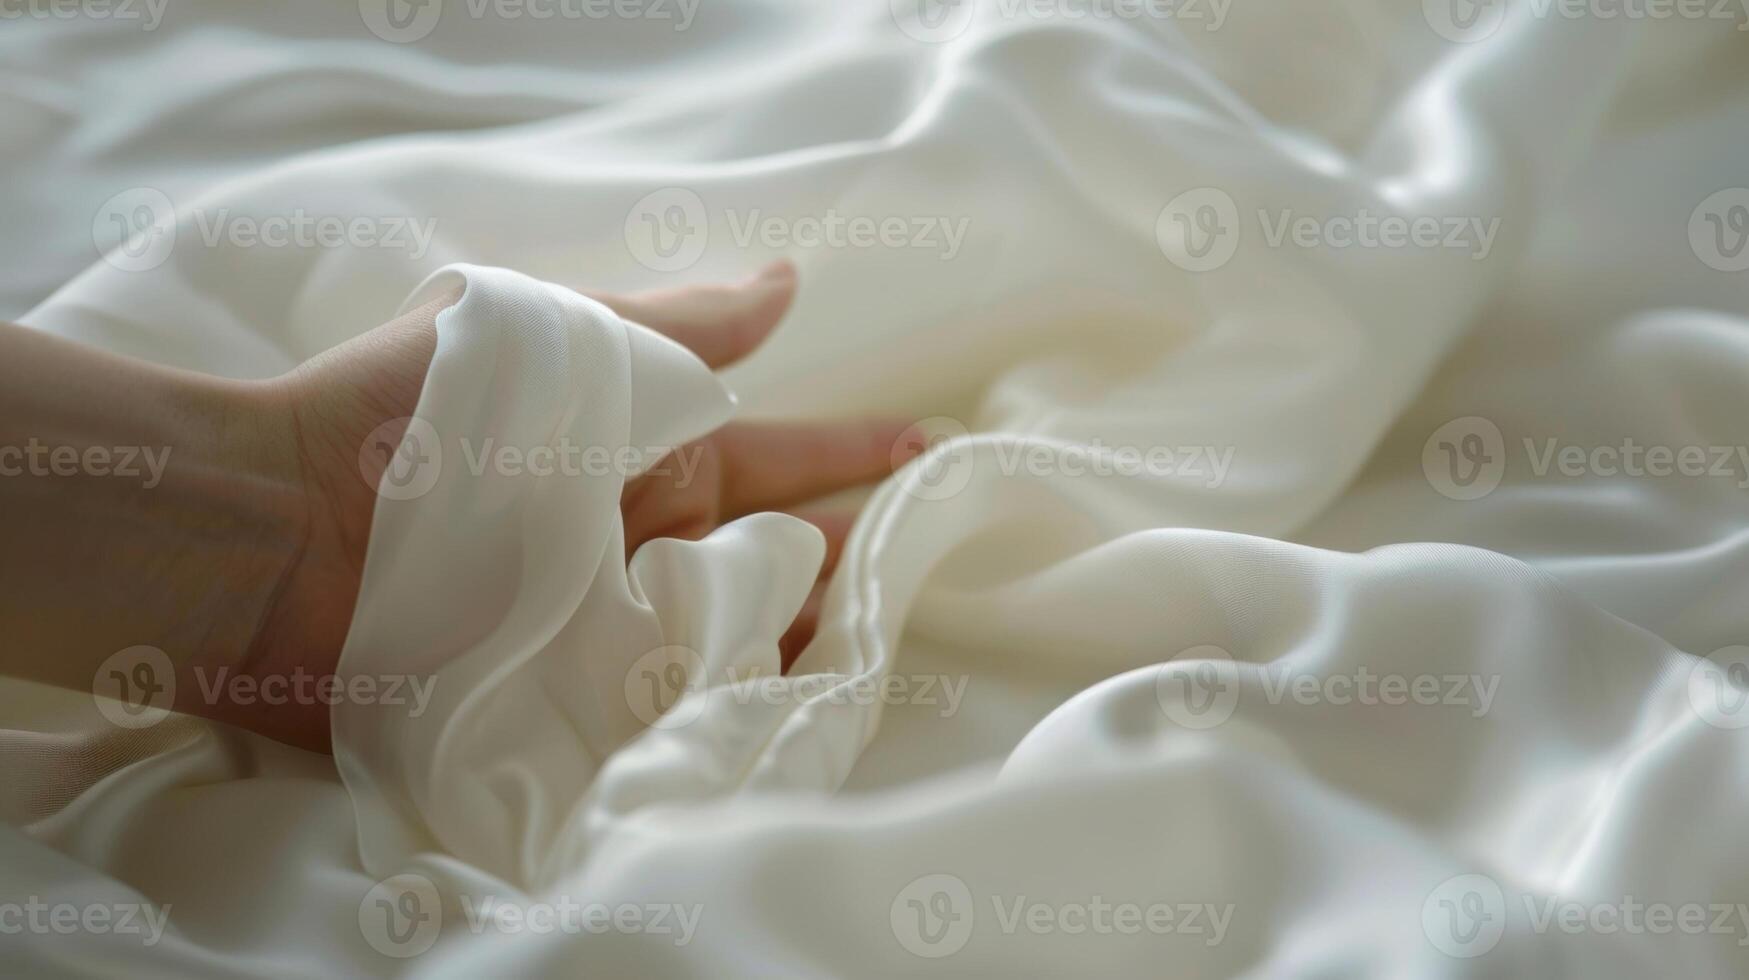 ein Person sanft Laufen ihr Hand Über ein Seide Kissenbezug staunen beim es ist Sanft und glatt Textur foto